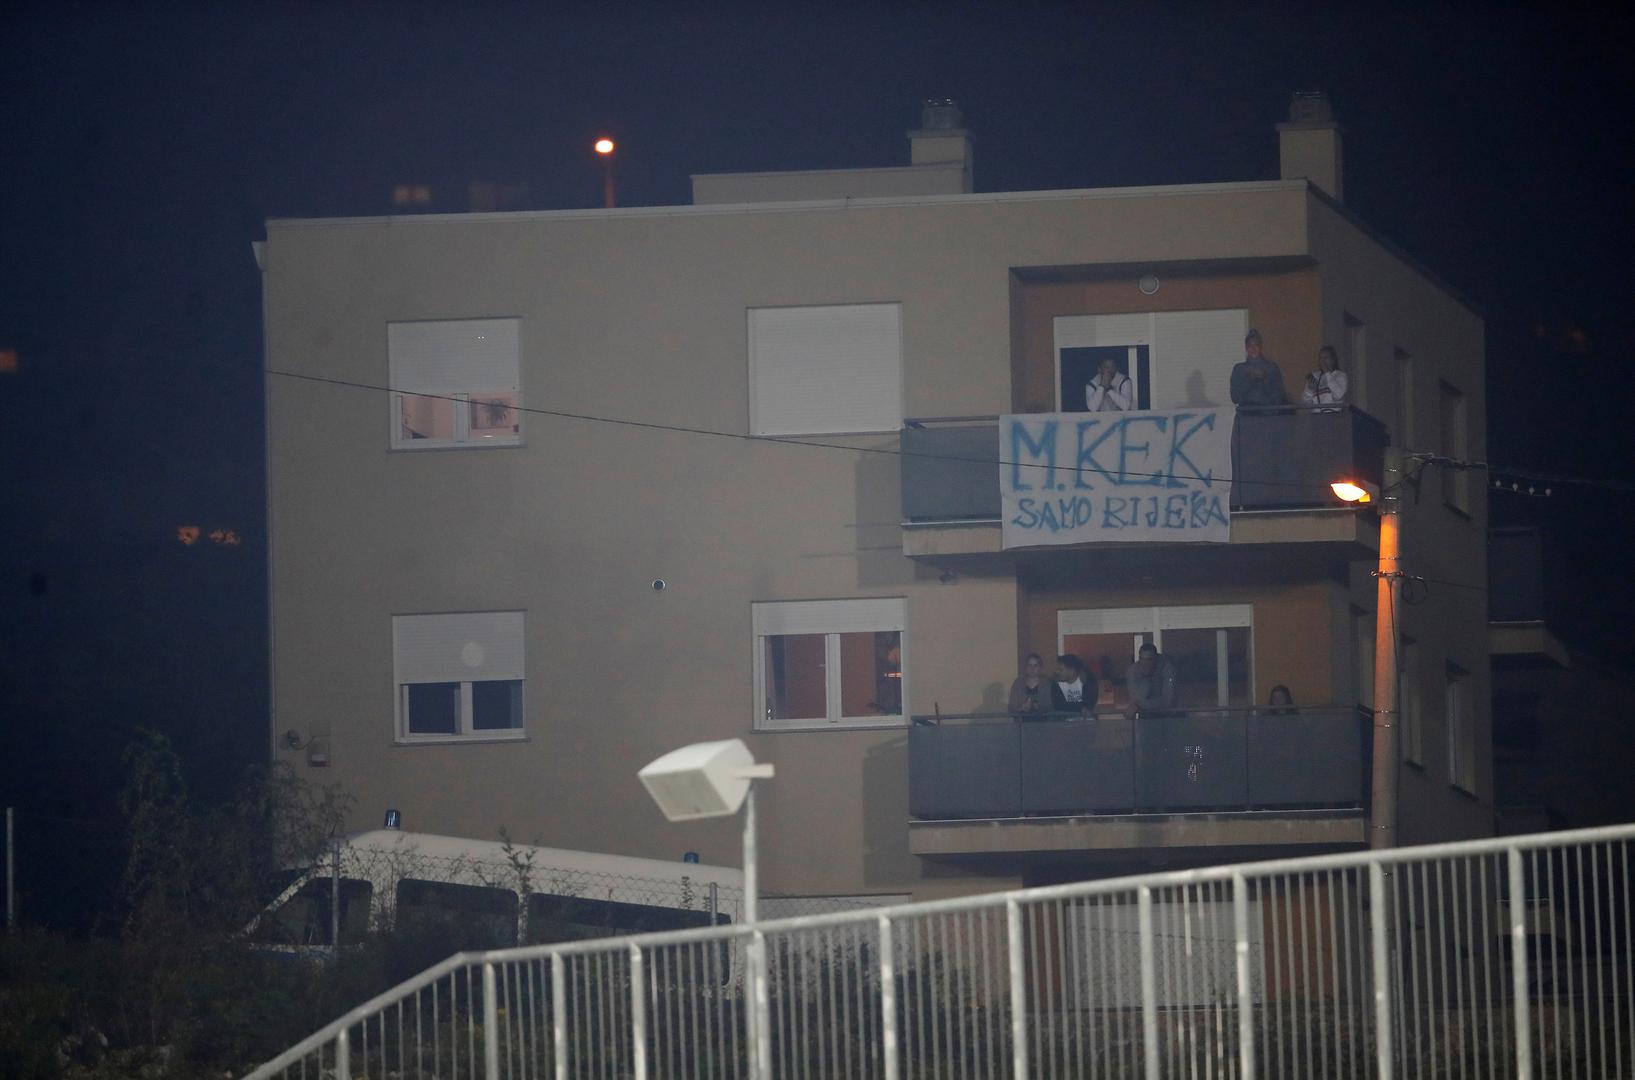 Utakmicu su pratili i hrvatski navijači s obližnjih balkona, a na jednom od njih osvanuo je i transparent: 'M. Kek, samo Rijeka'.